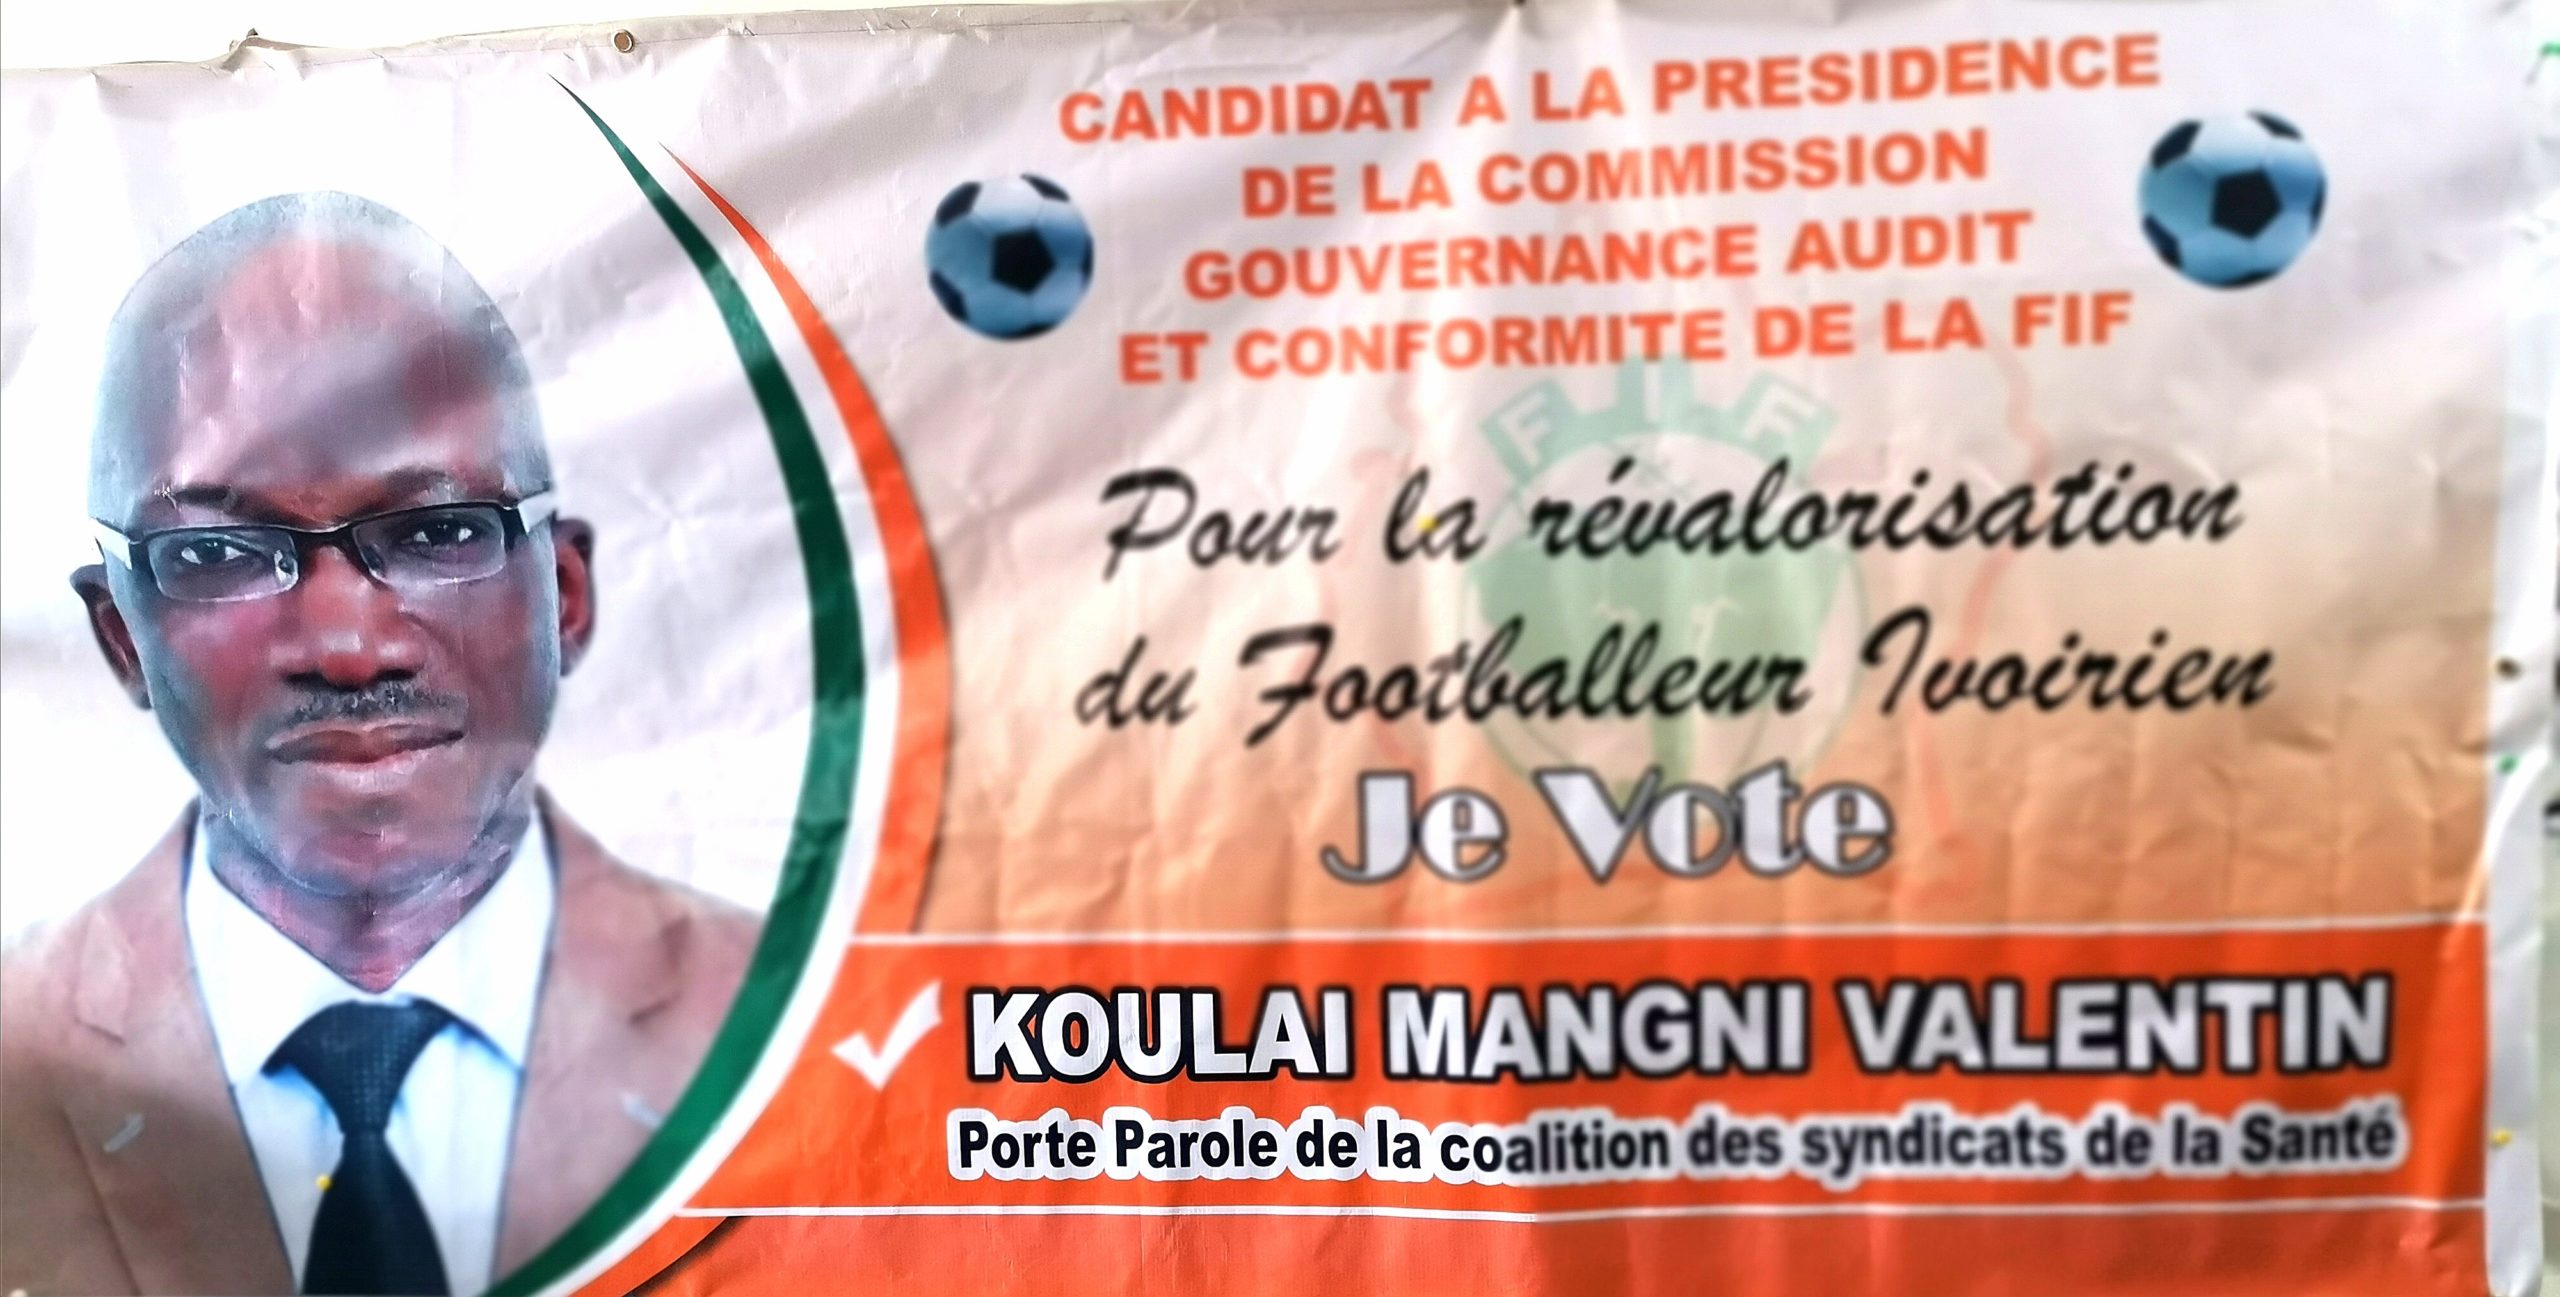 Côte d’Ivoire :Élection à la Présidence de la Commission Audit et Conformité de la FIF, Koulaï Mangni Valentin Candidat présente son programme et plan d’action.